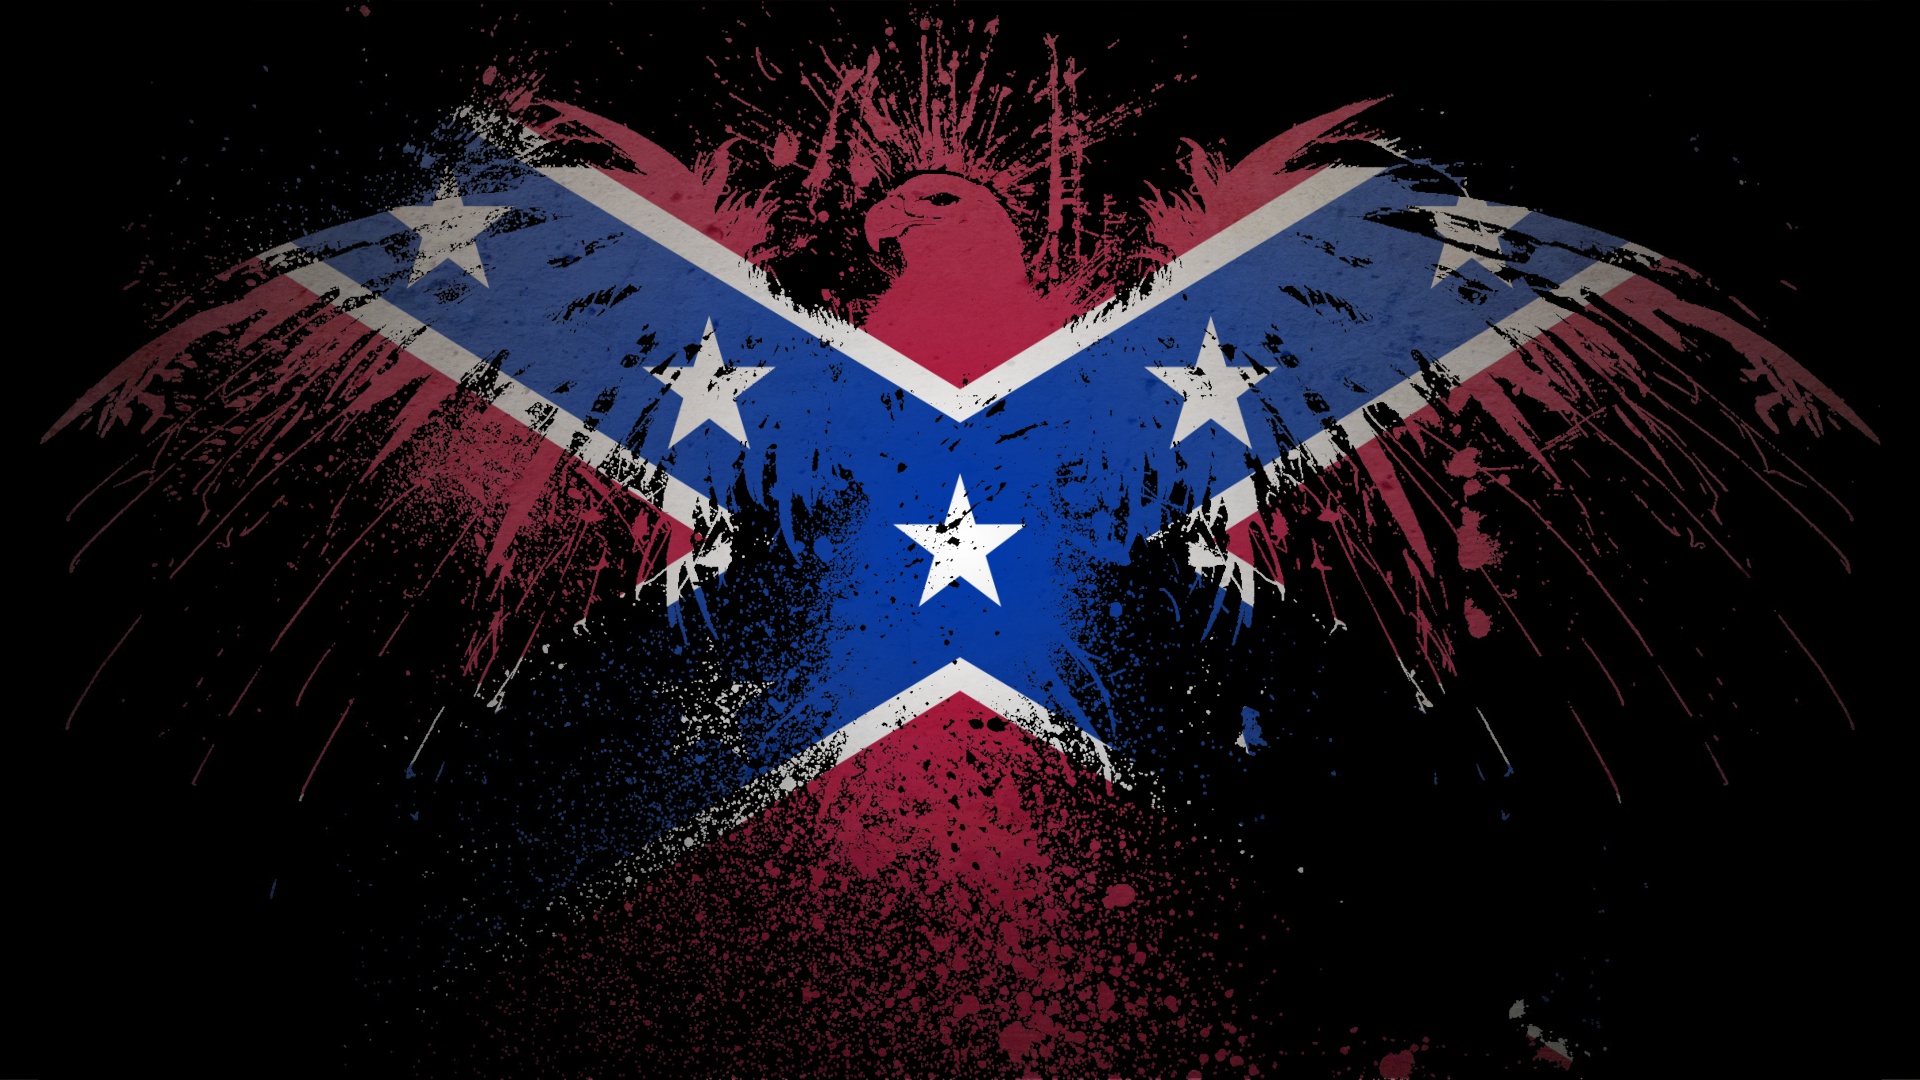 Confederate Jpg